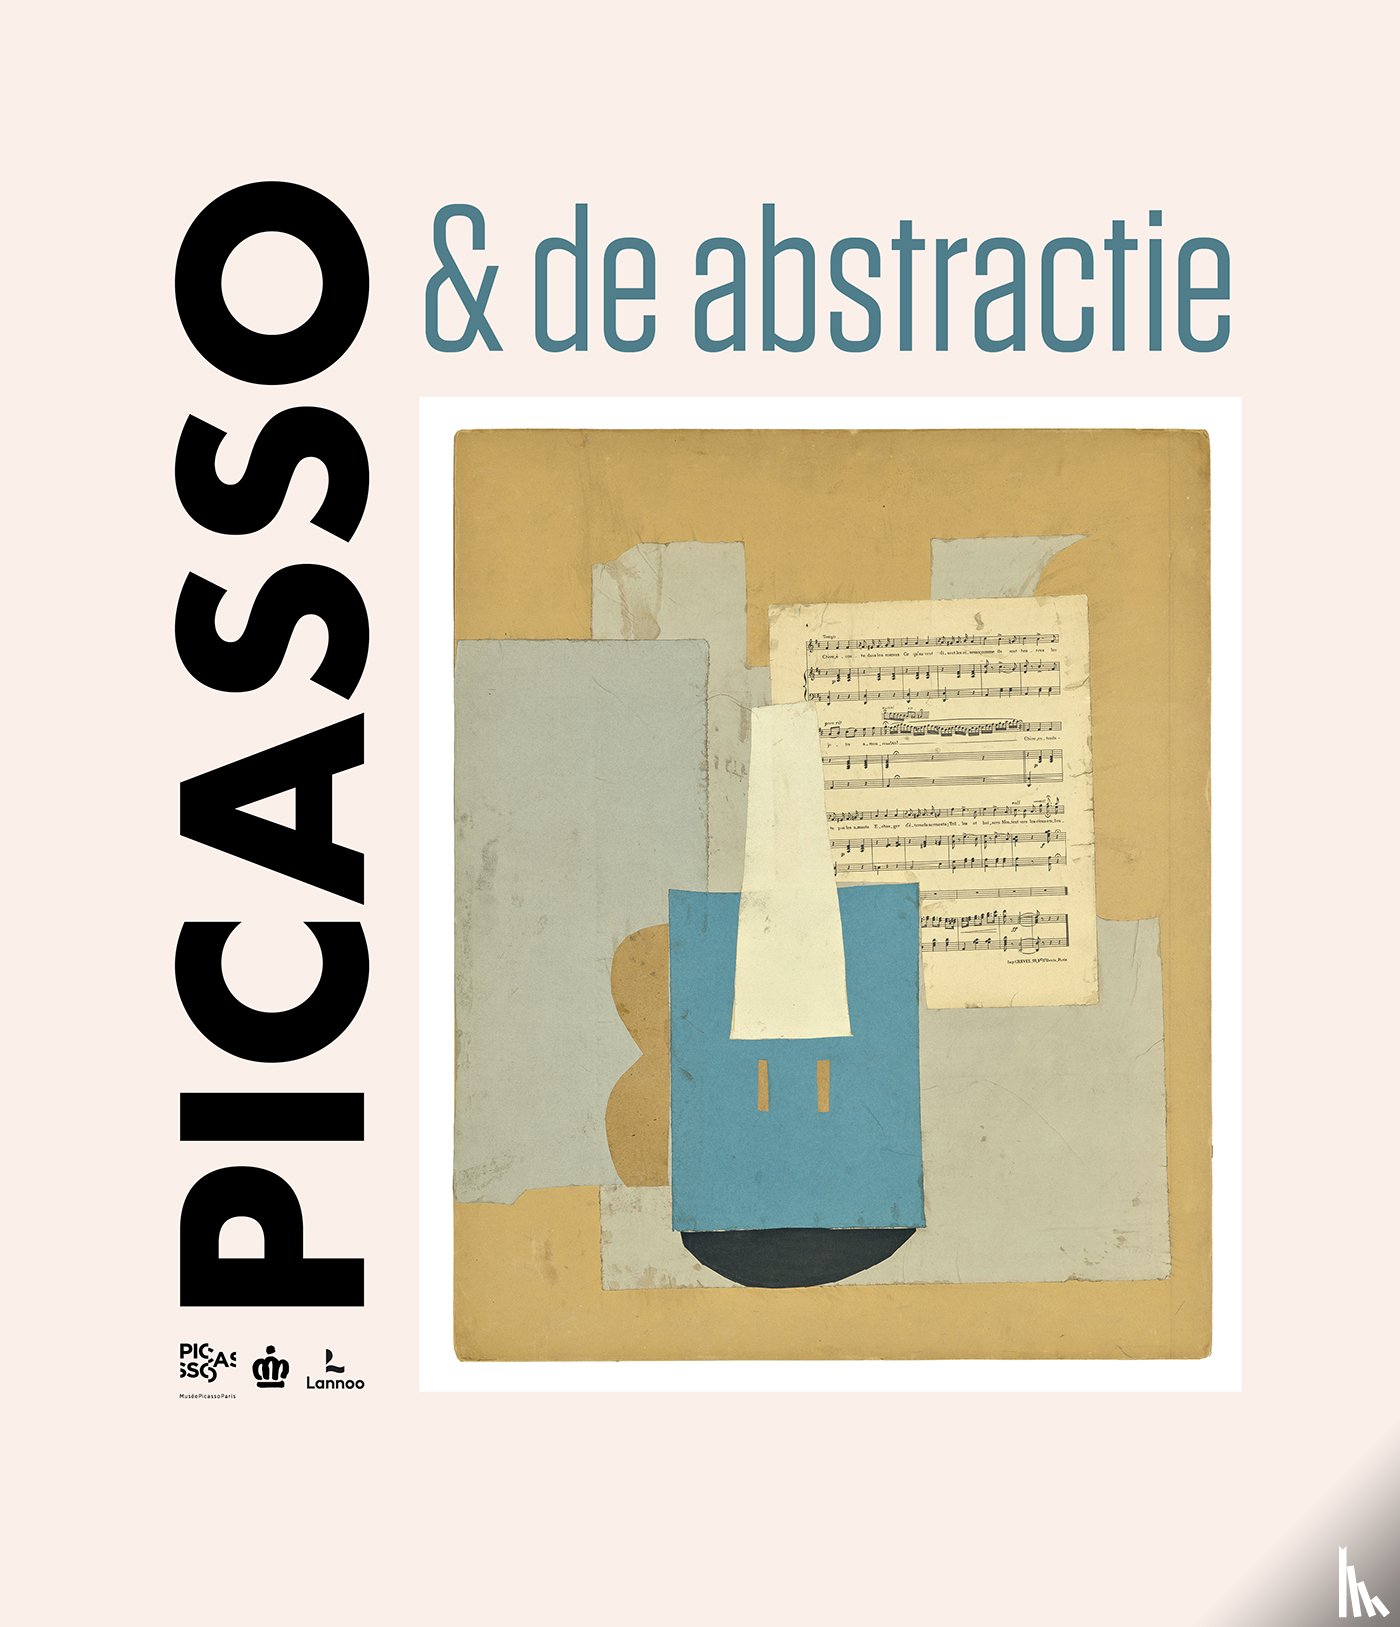 Kon. Musea voor Schone Kunsten - Picasso & de abstractie